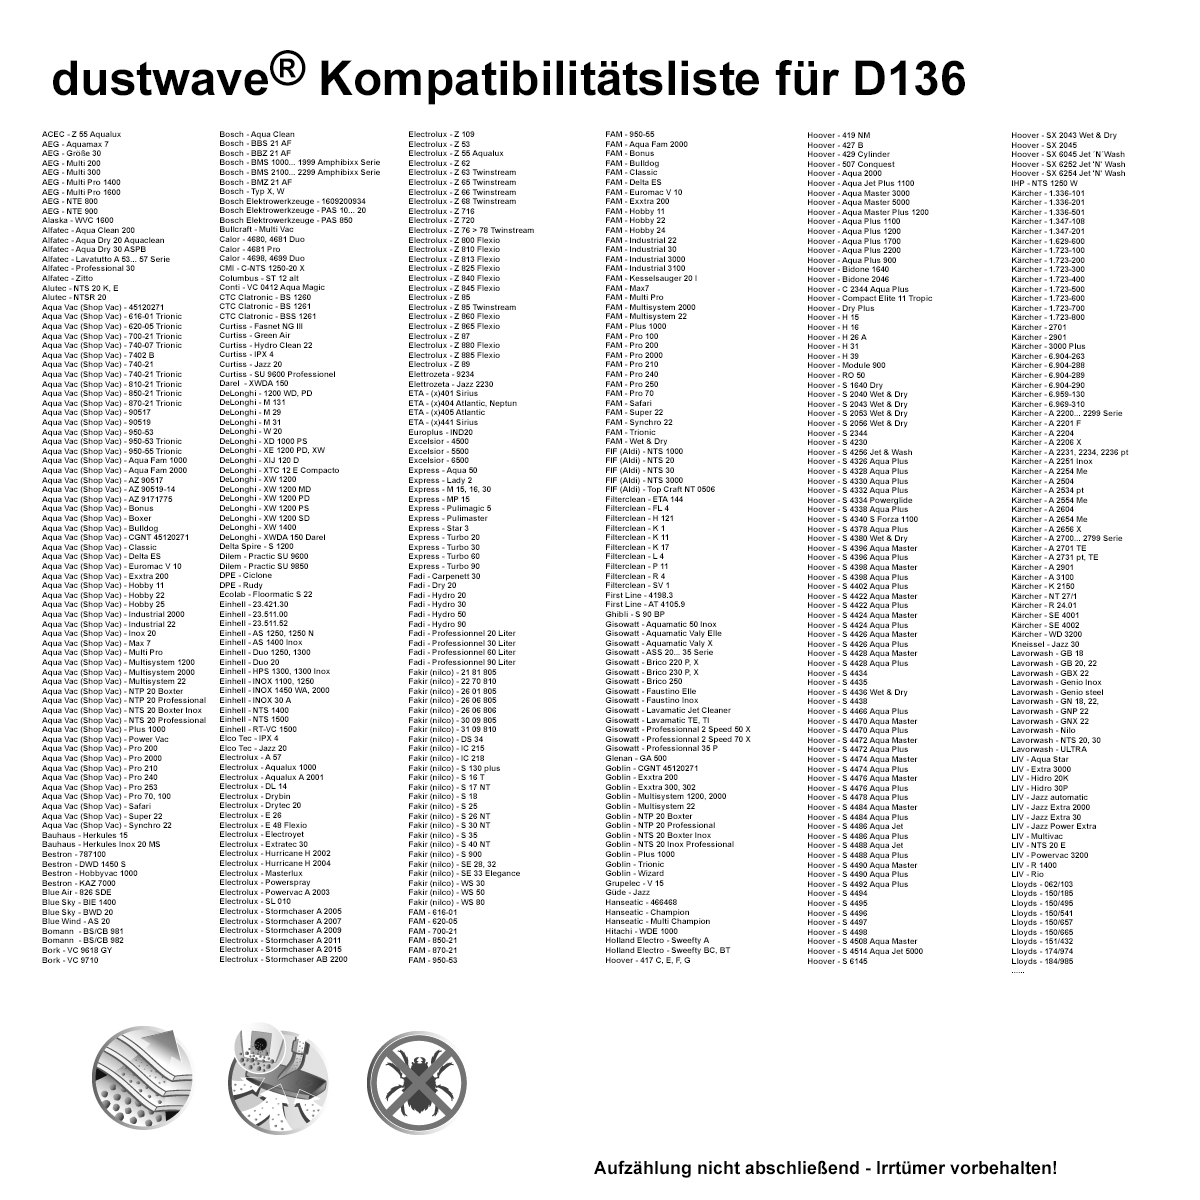 Dustwave® 40 Staubsaugerbeutel für Hoover H 39 / H39 - hocheffizient, mehrlagiges Mikrovlies mit Hygieneverschluss - Made in Germany